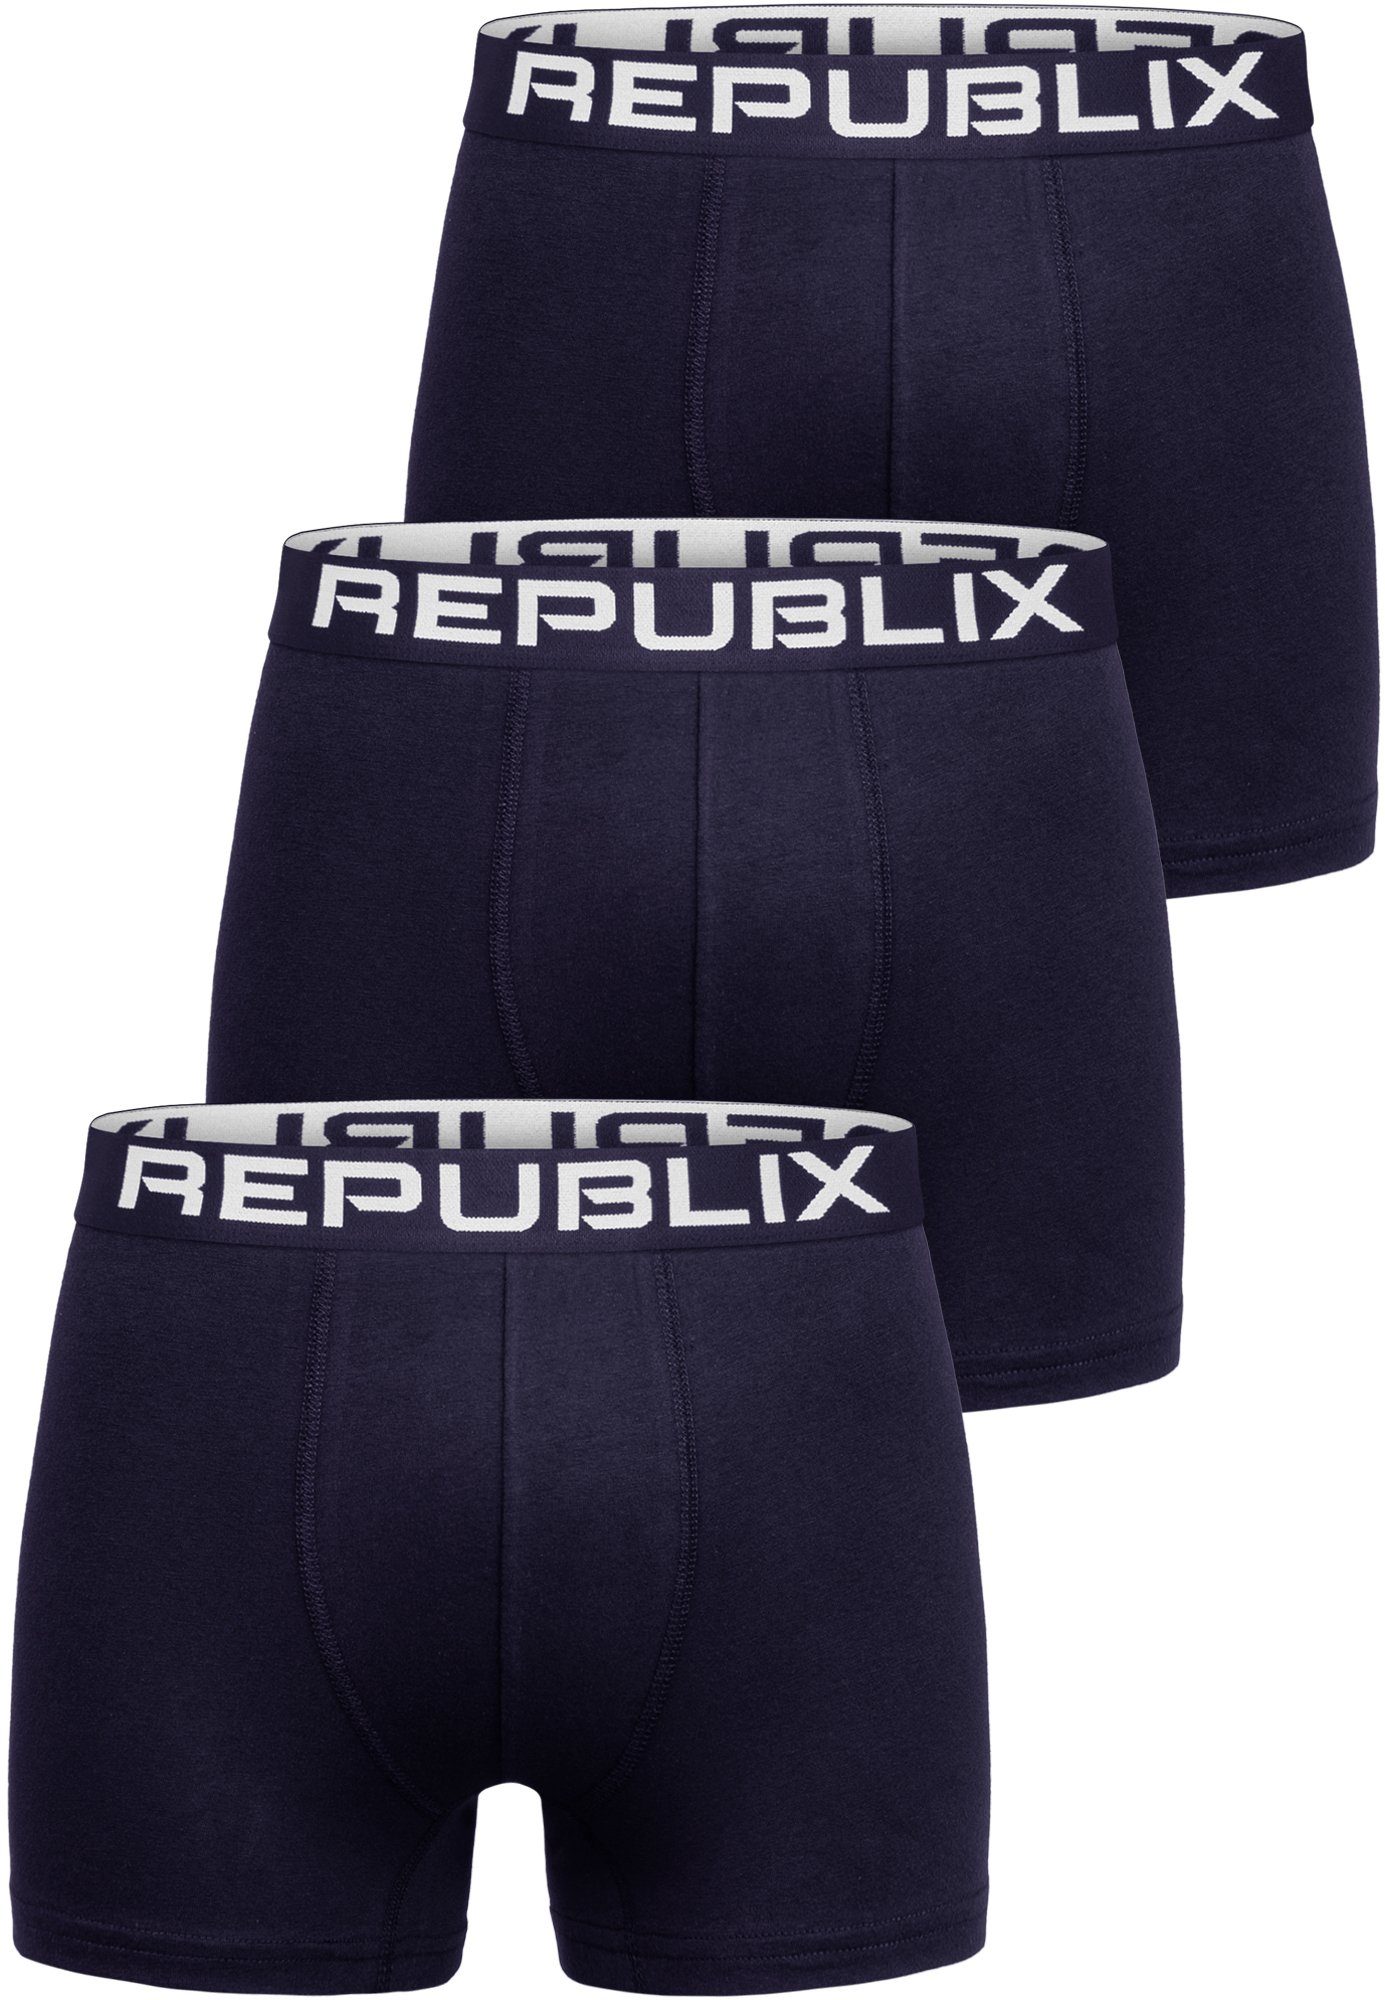 REPUBLIX Boxershorts DON (3er-Pack) Herren Baumwolle Männer Unterhose Unterwäsche Navyblau/Navyblau